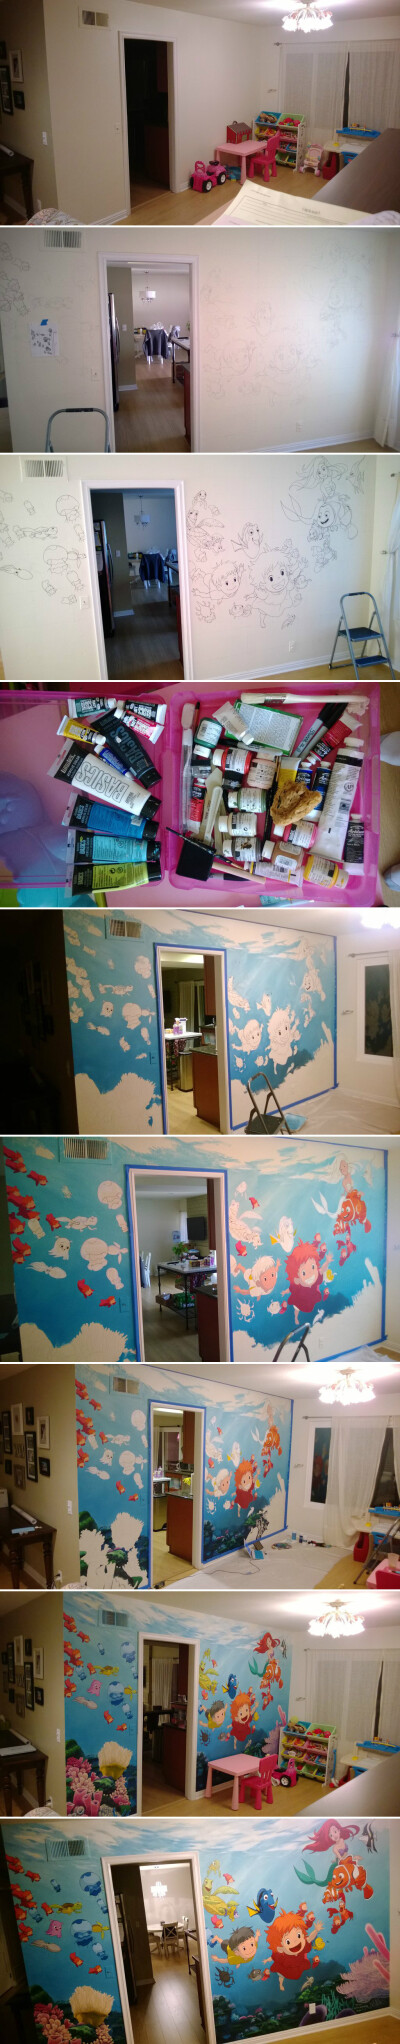 一个会画画的父亲是如何改造女儿的房间的..